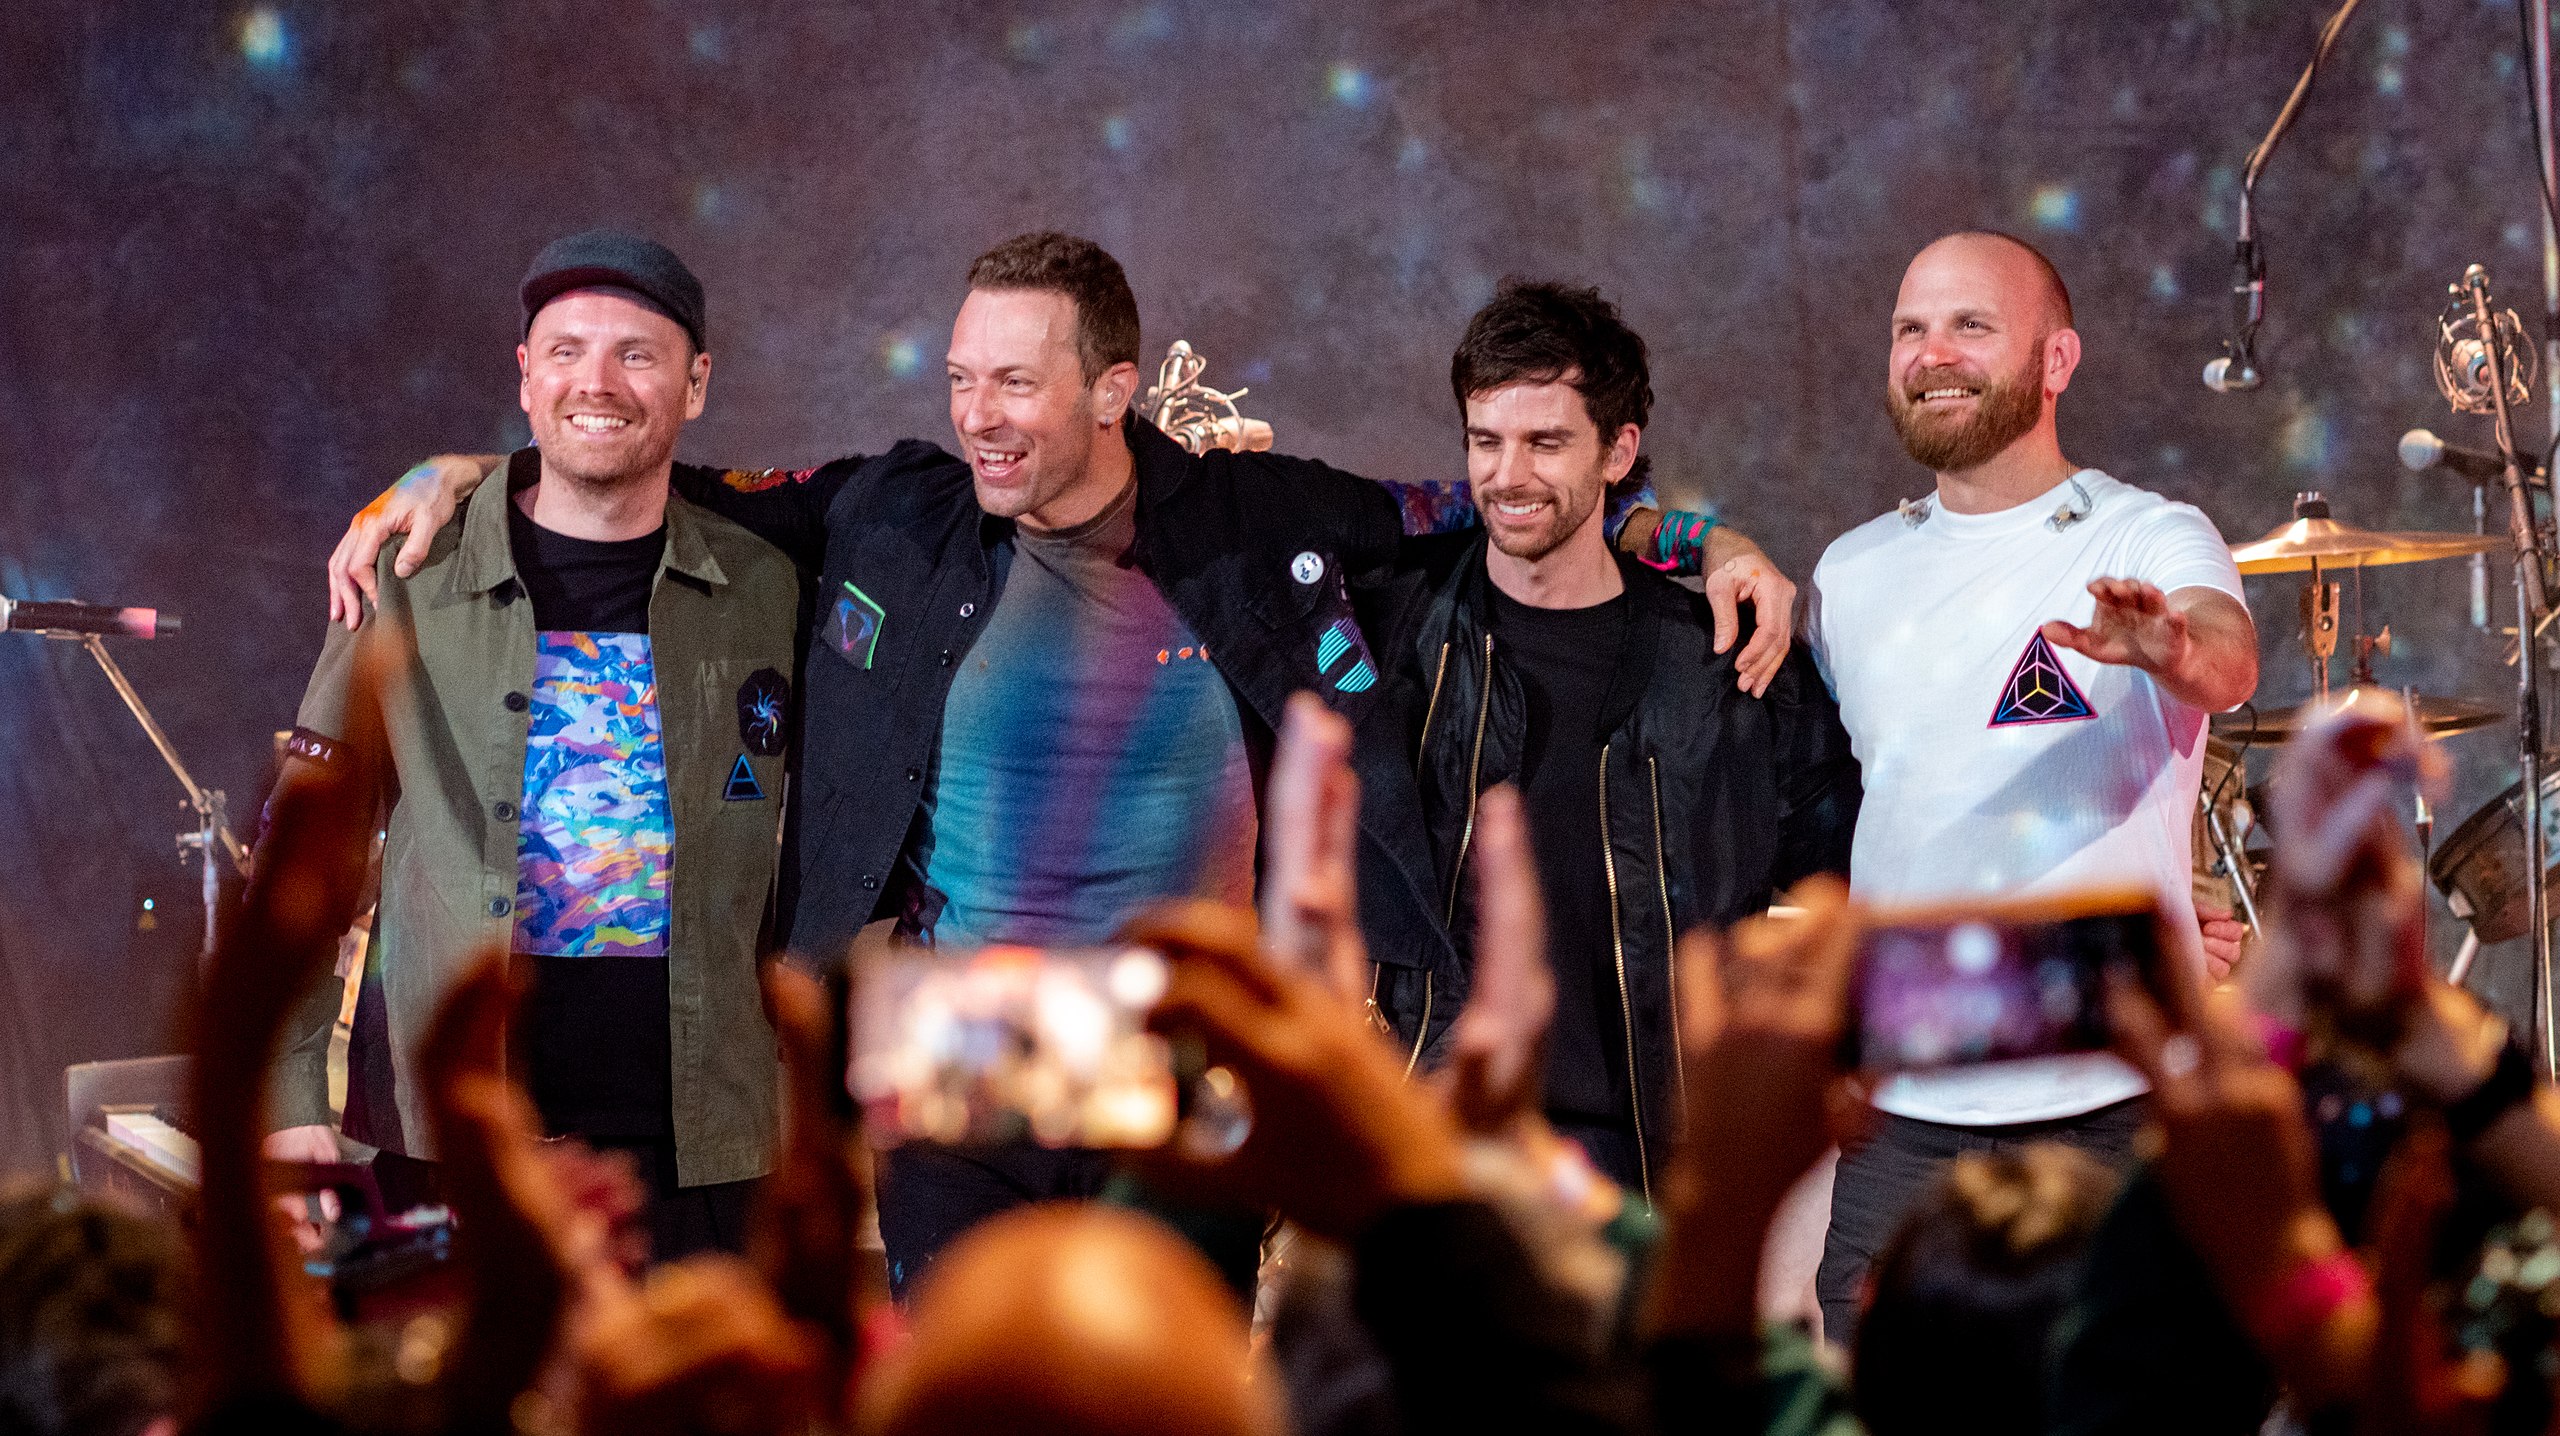 Formé à Londres en 1998, Coldplay est un groupe de musicien rock anglais composé de 4 membres : Chris Martin, Jonny Buckland, Guy Berryman et Will Champion.